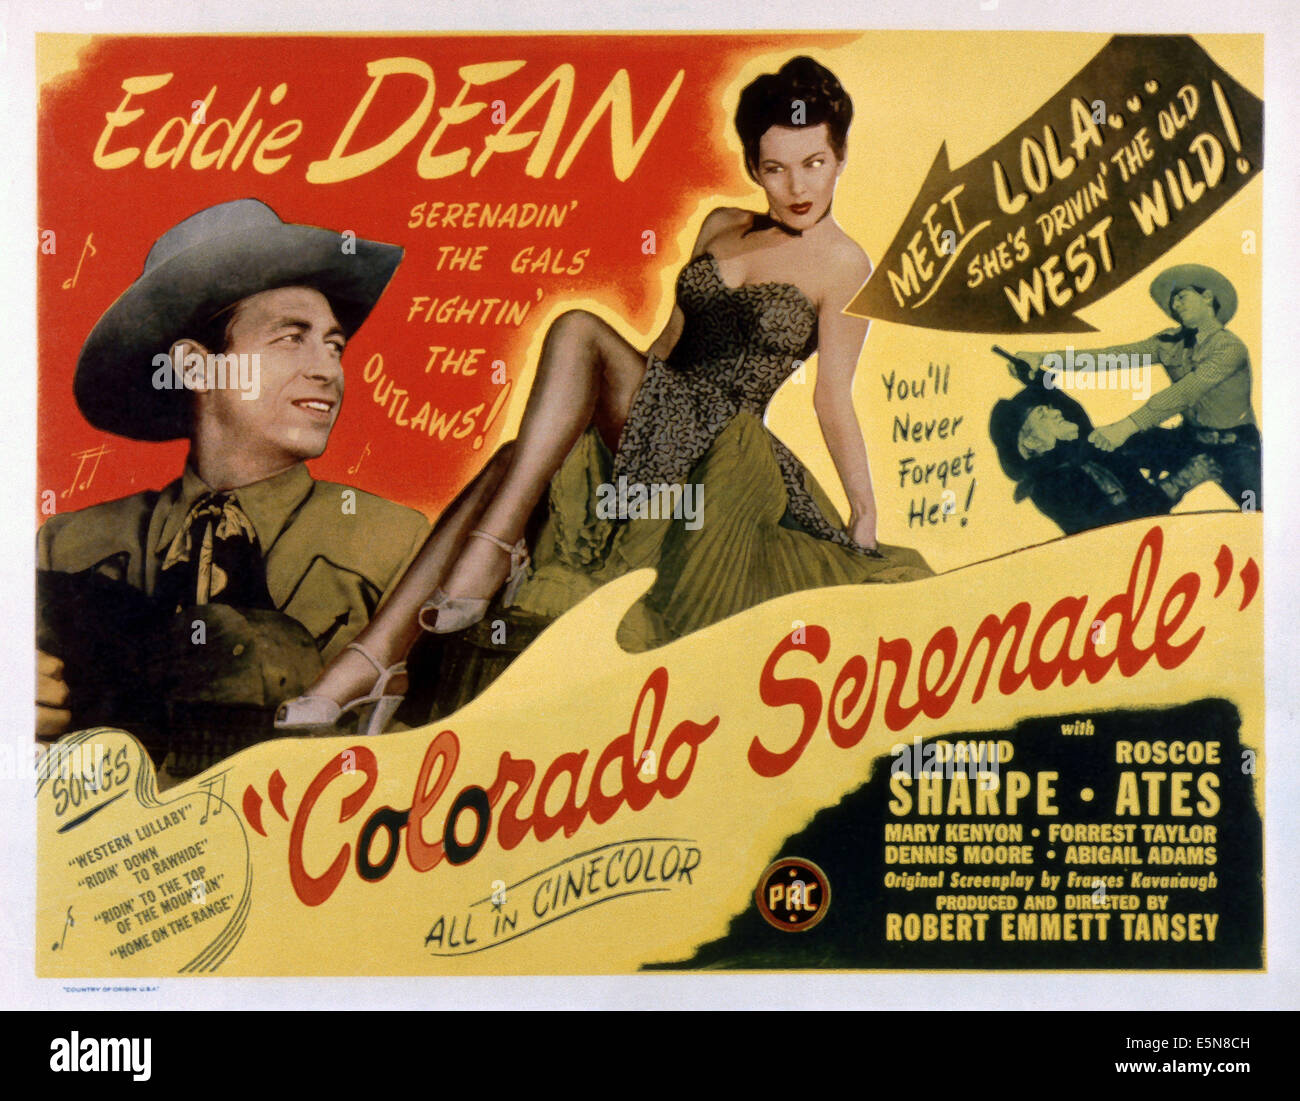 COLORADO SERENADE, from left: Eddie Dean, Abigail Adams, 1946 Stock Photo